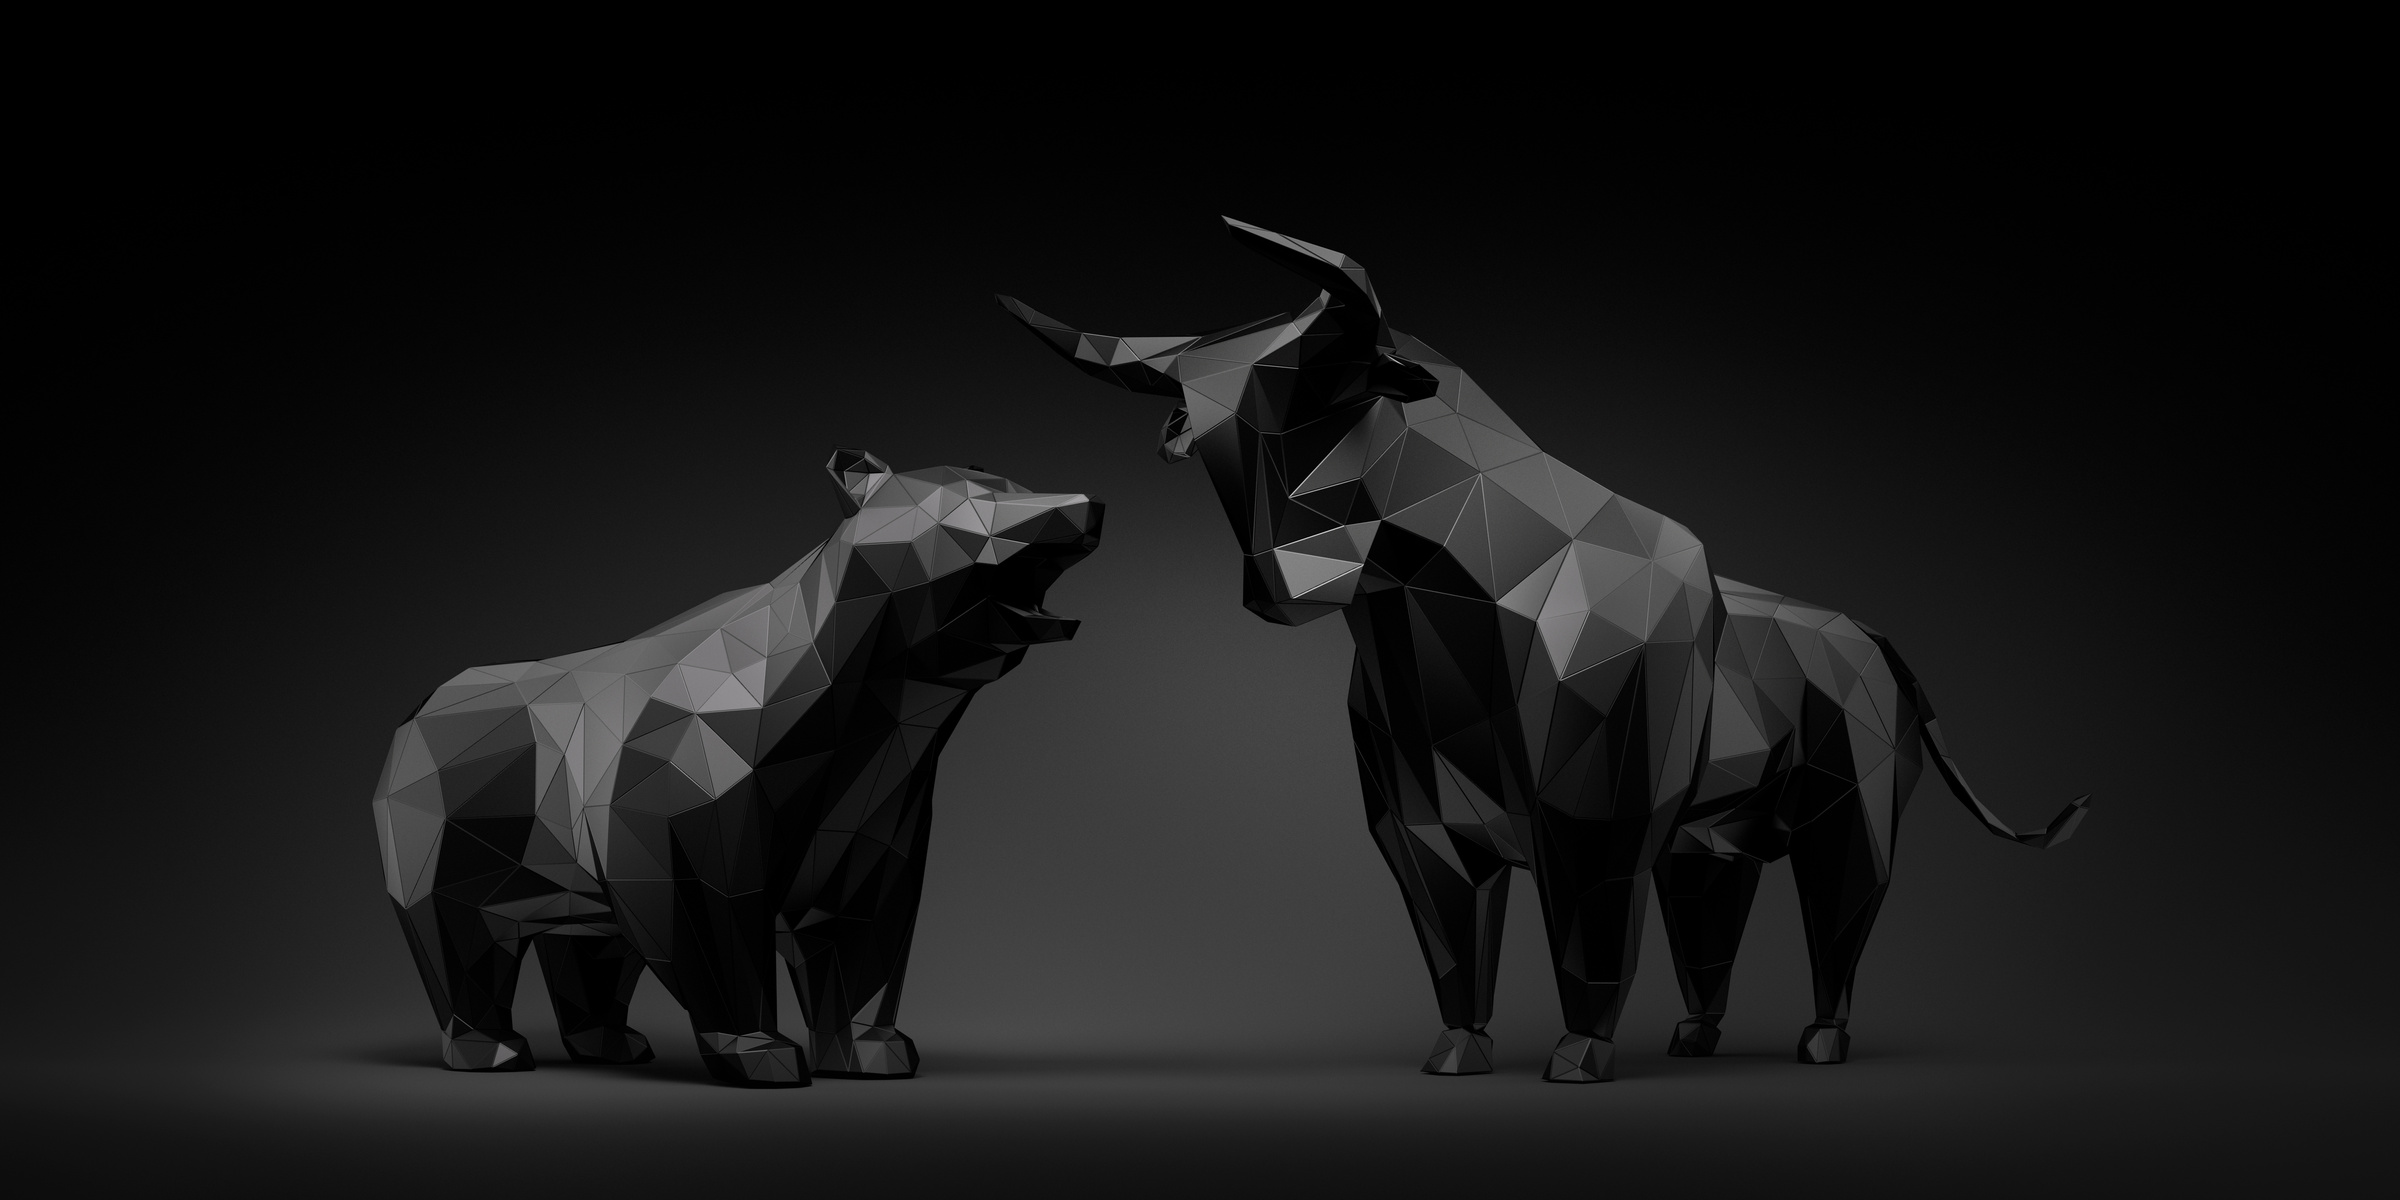 3D Geometric Black Bull and Bear